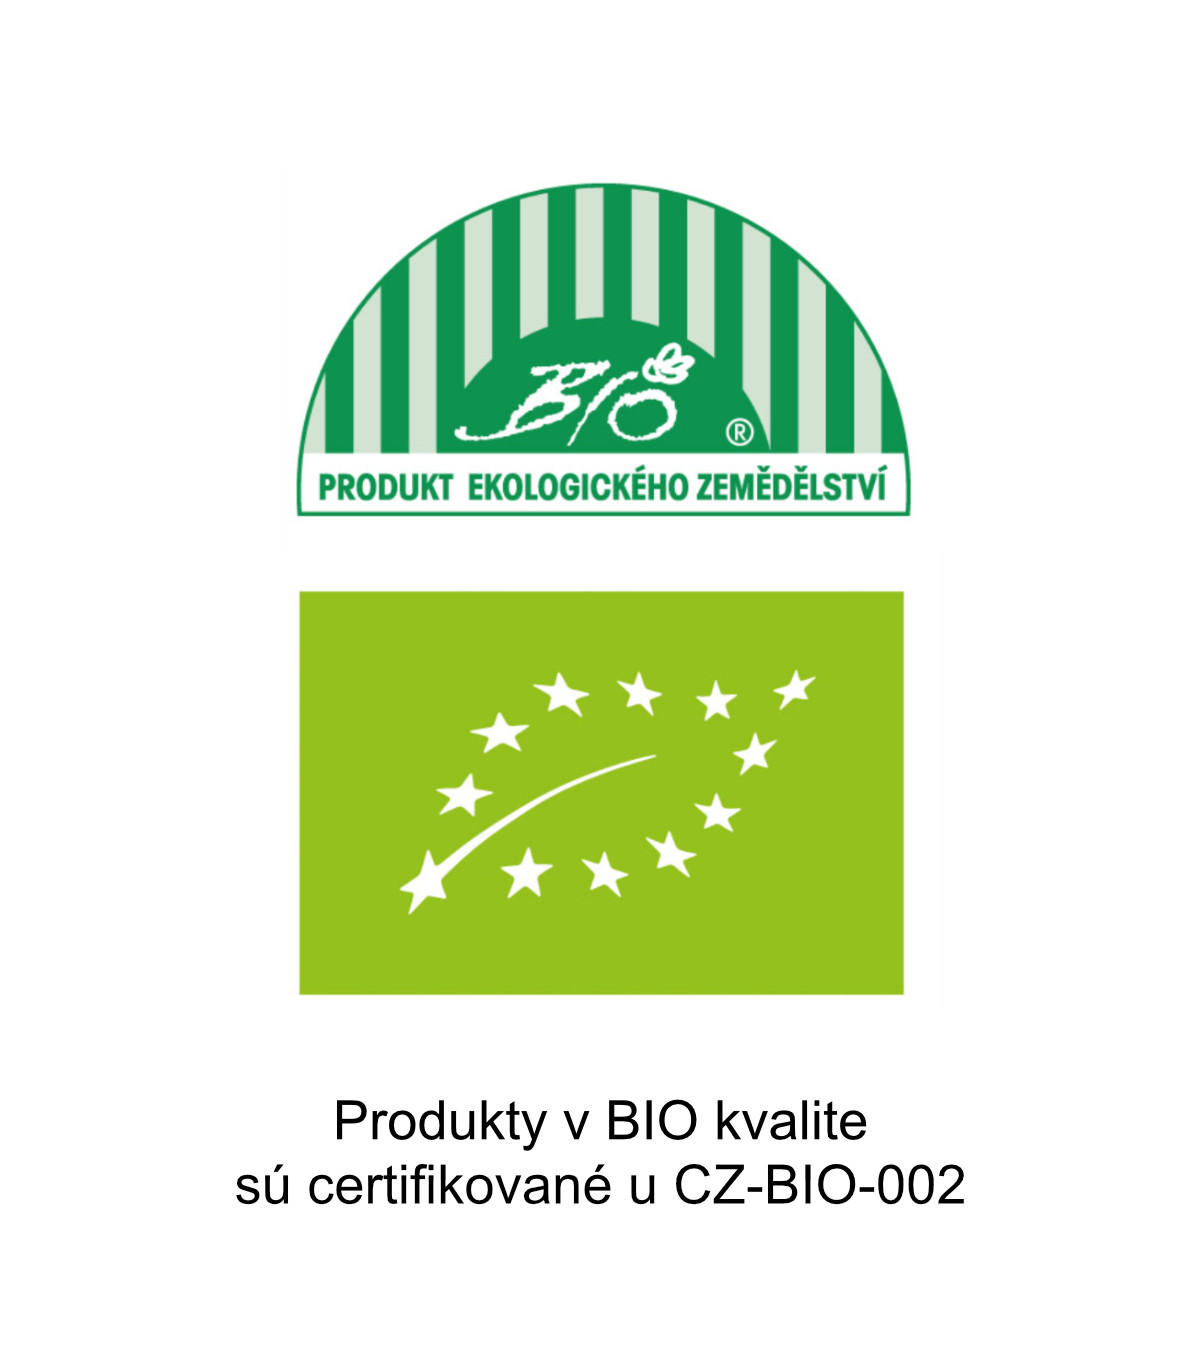 Produkty v BIO kvalite sú certifikované u CZ-BIO-002
​